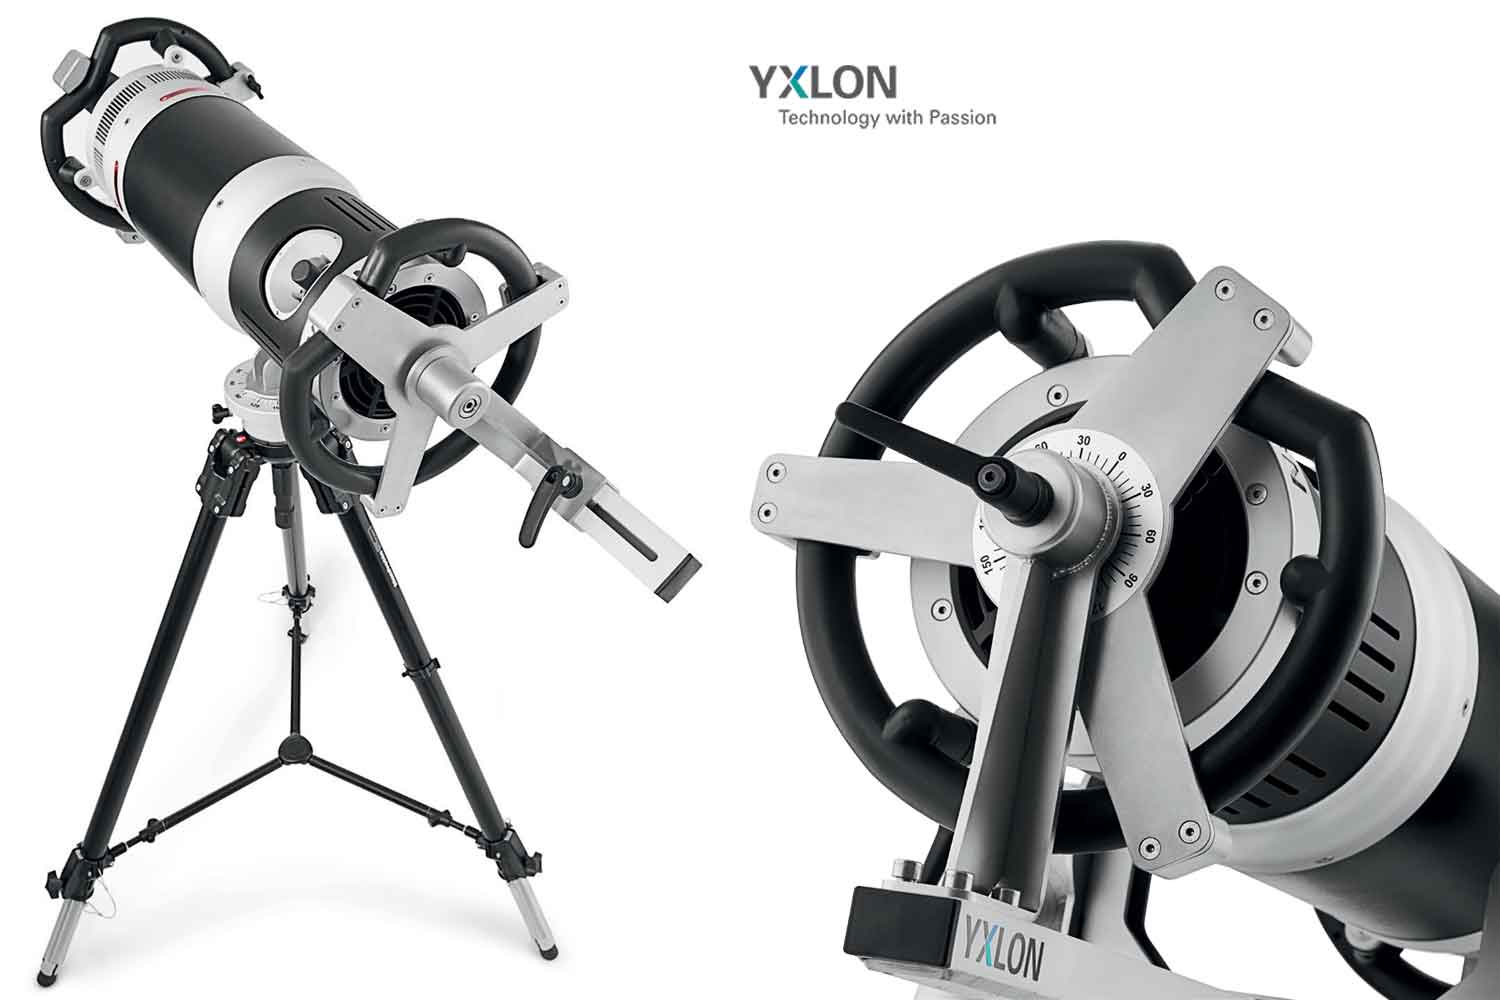 لوازم جانبی و تجهیزات بازرسی رادیوگرافی صنعتی اشعه ایکس پرتابل YXLON